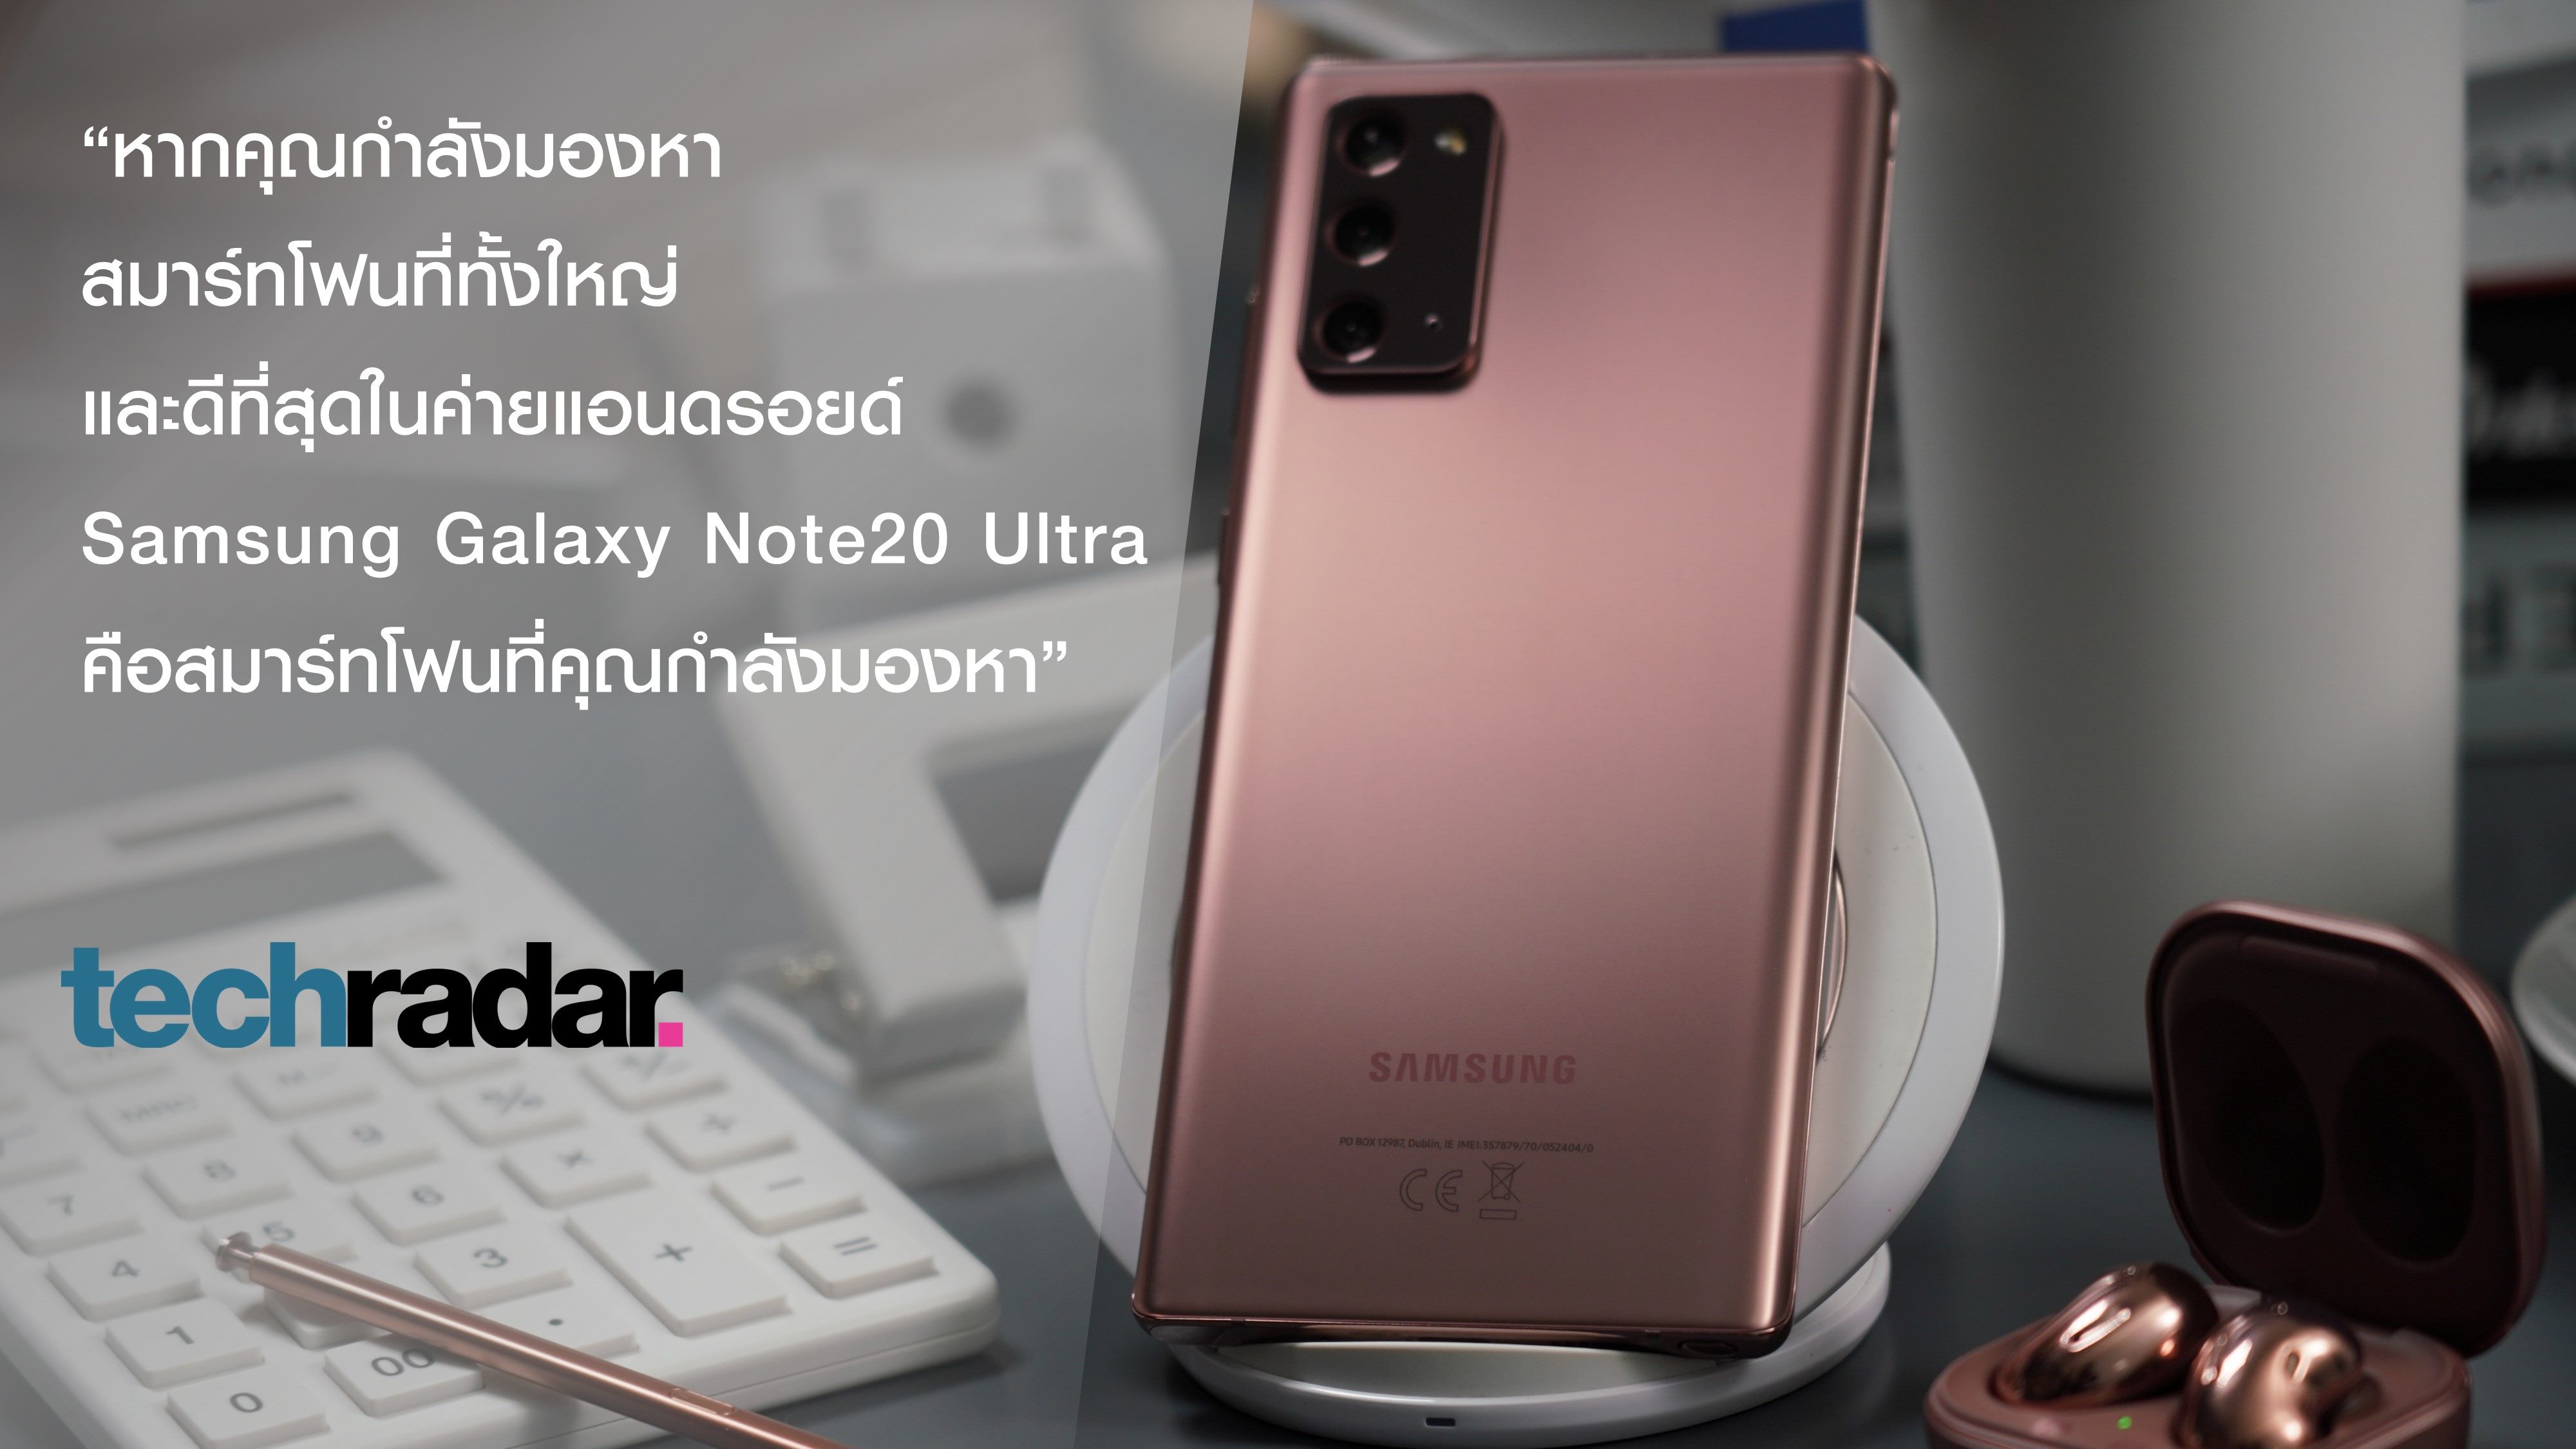 เผยมุมมองจากสื่อทั่วโลก ต่อสุดยอดพาวเวอร์โฟนแห่งยุค “Samsung Galaxy Note20 Series”